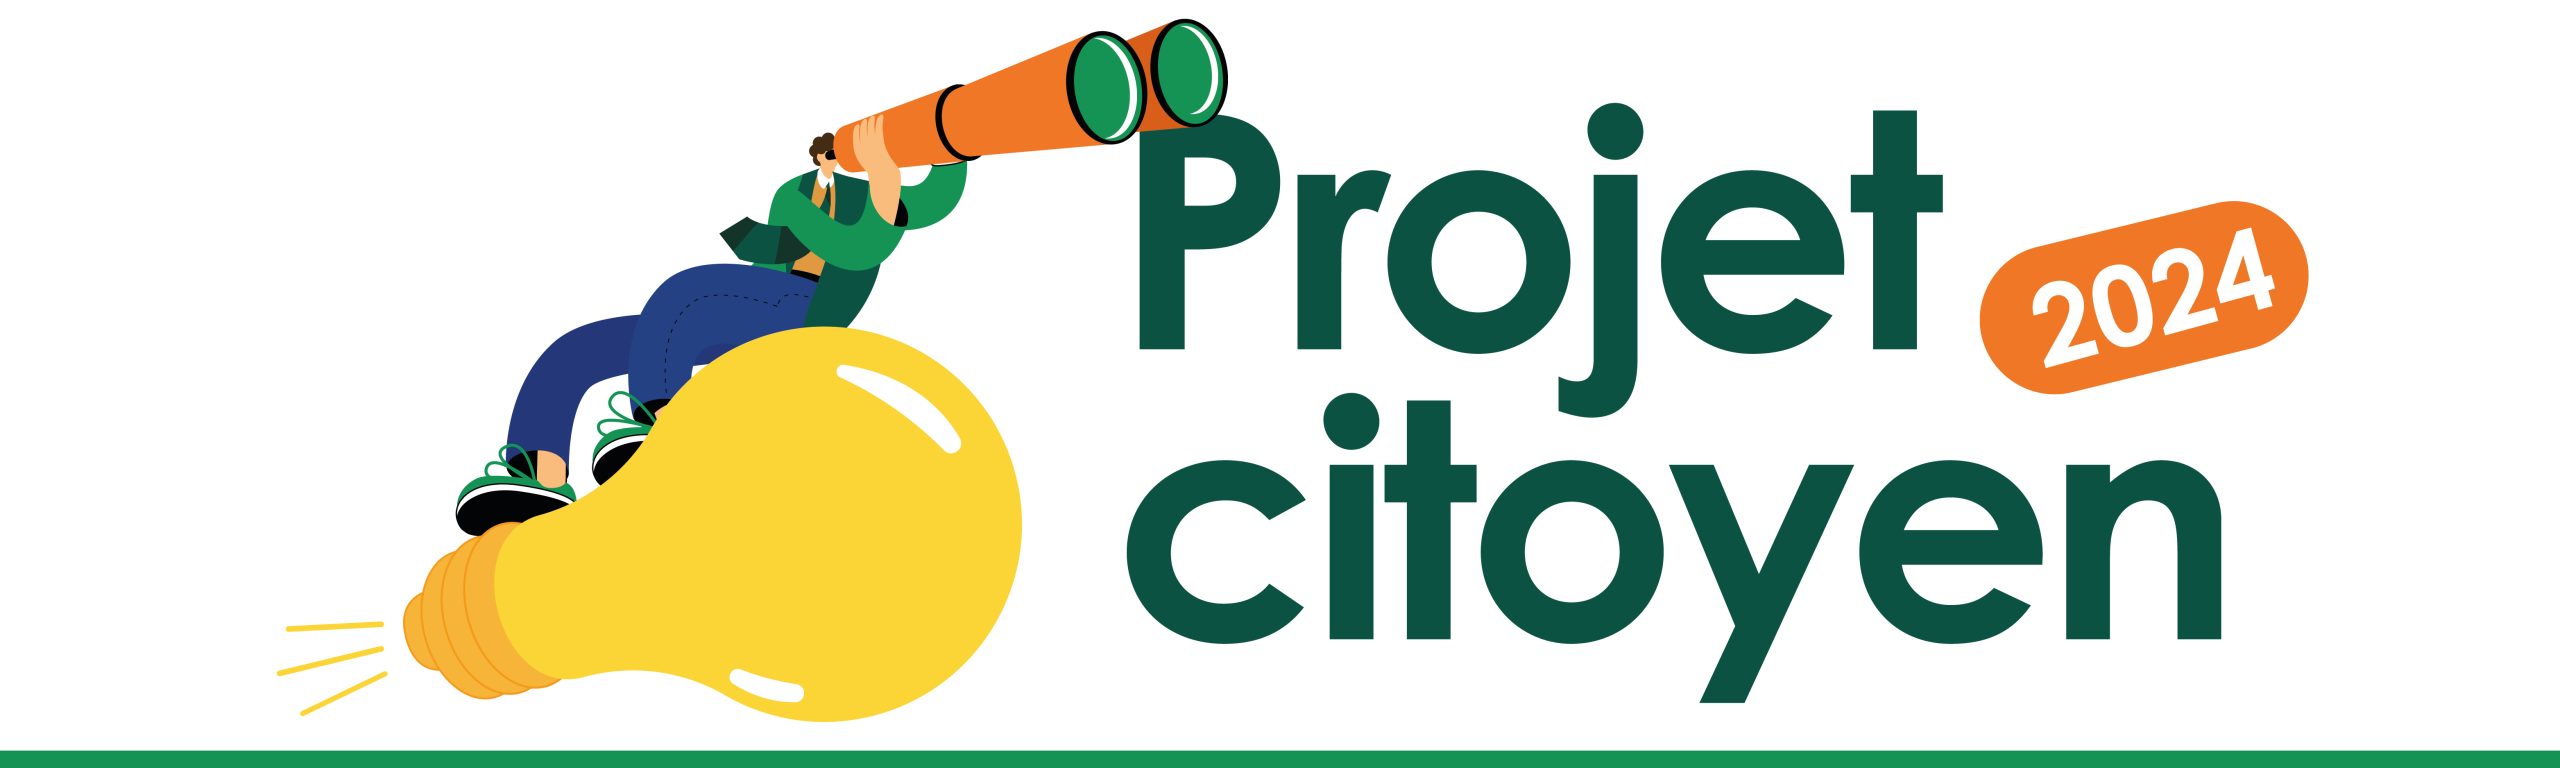 Projet citoyen 2024 – Le projet gagnant